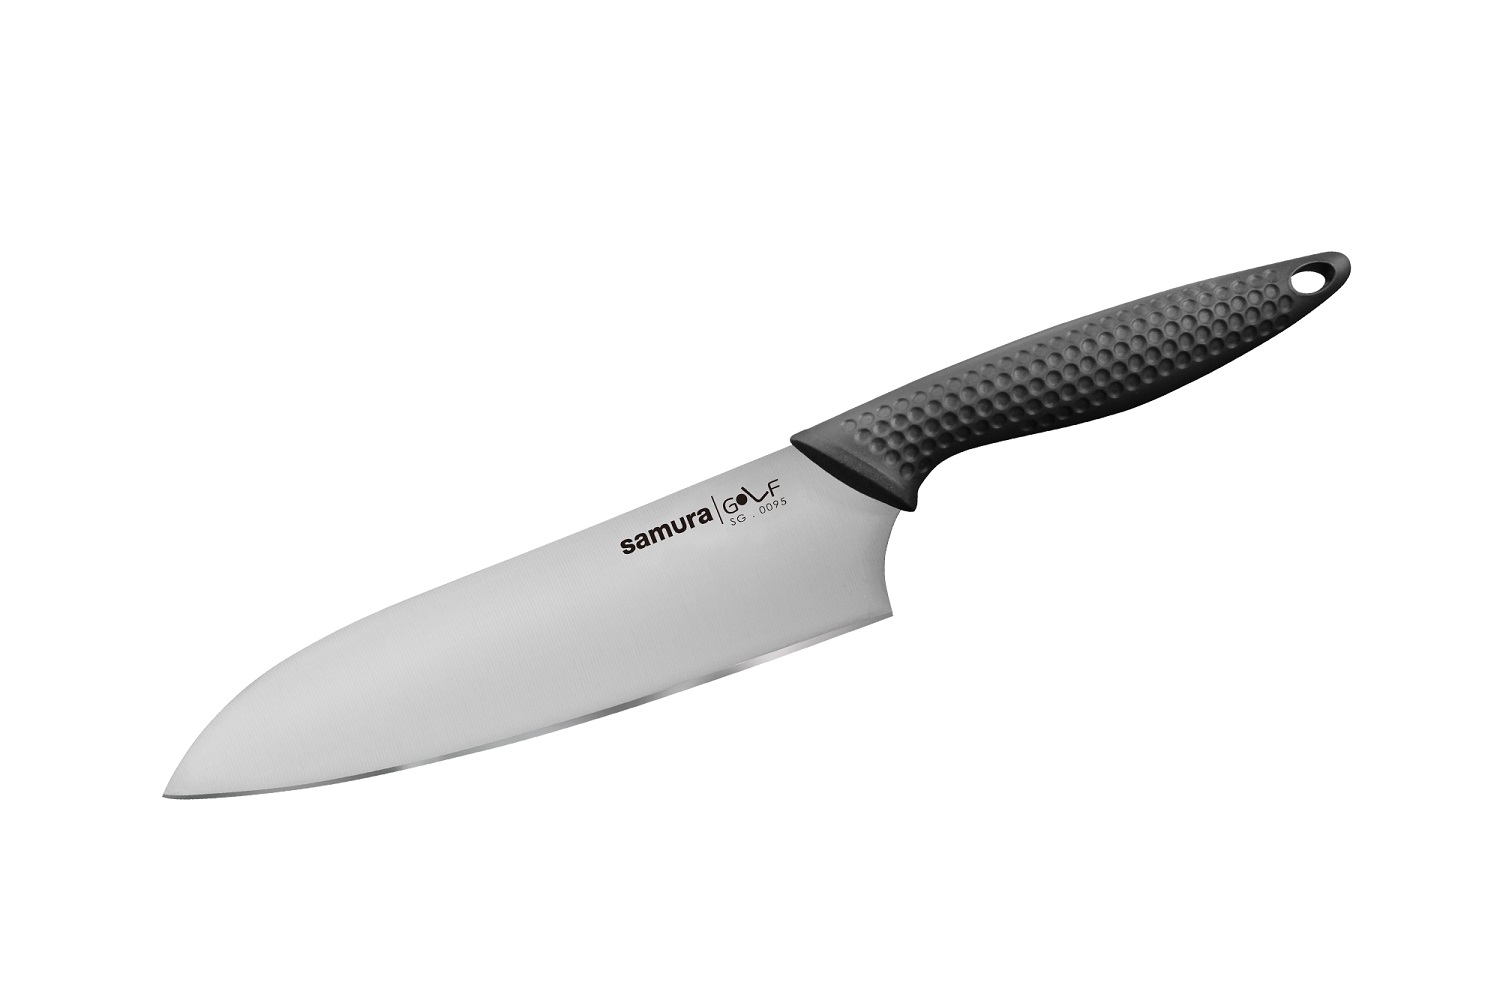 Нож Samura сантоку Golf, 18 см, AUS-8 нож овощной golf stonewash 9 8 см sg 0010b k samura